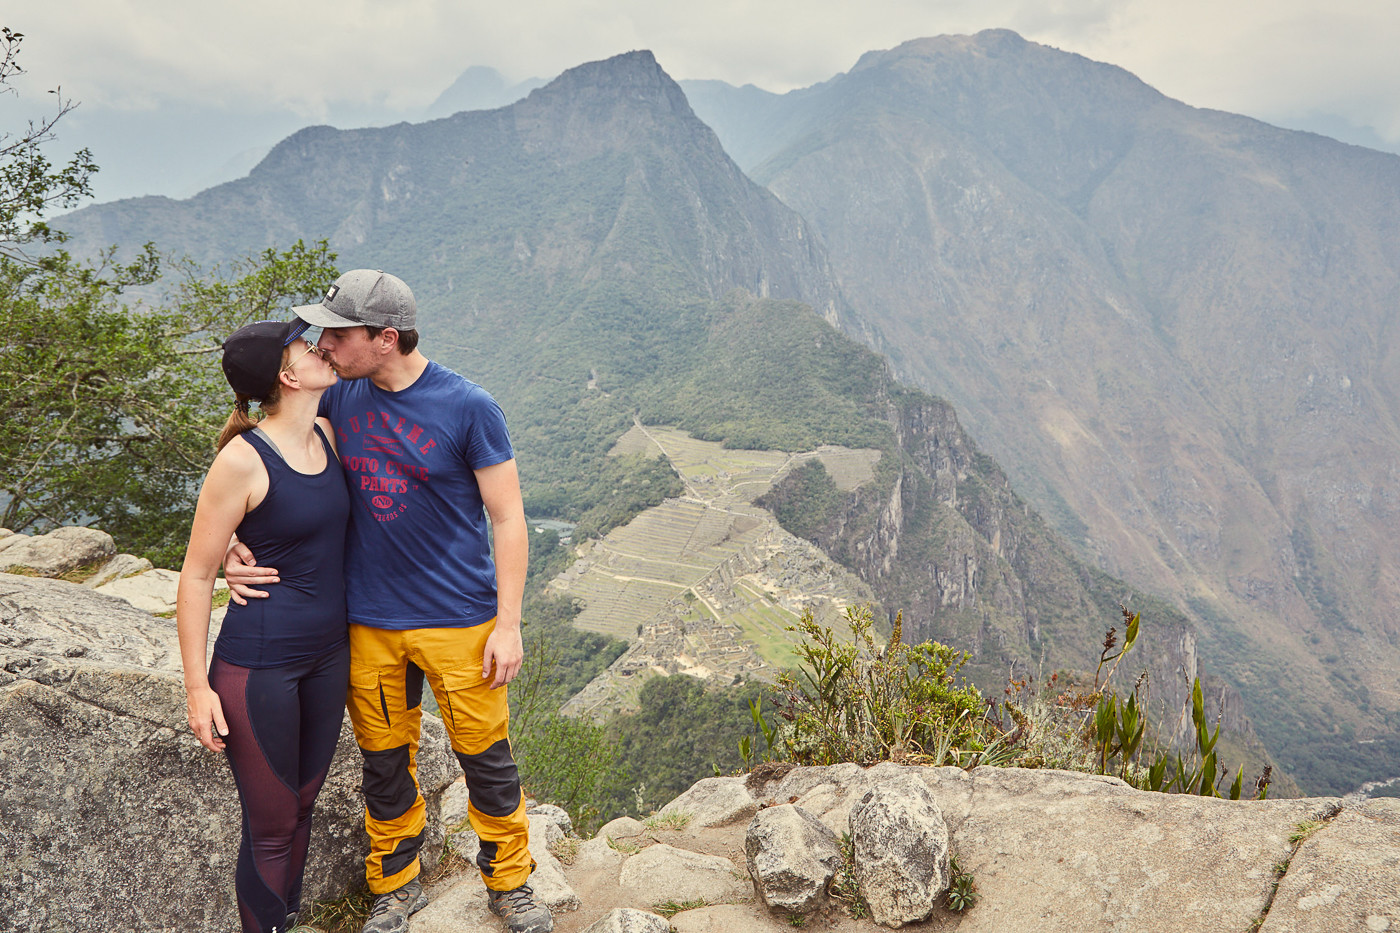 Wir haben es geschafft und waren endlich auf dem Huayna Picchu. Ein Bussi vor lauter Freude gab es auch